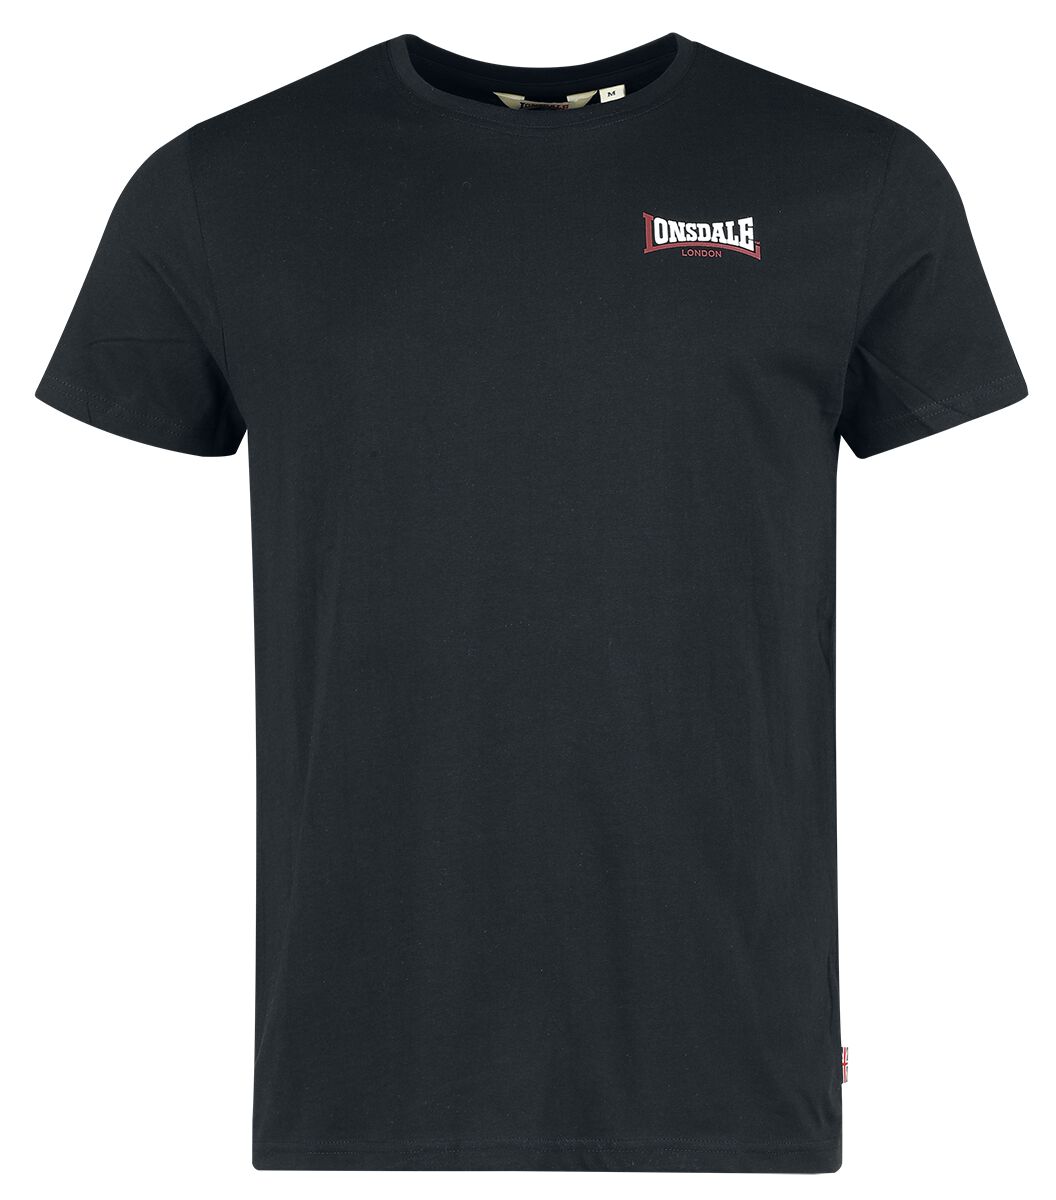 Lonsdale London T-Shirt - DALE - S bis XXL - für Männer - Größe S - schwarz